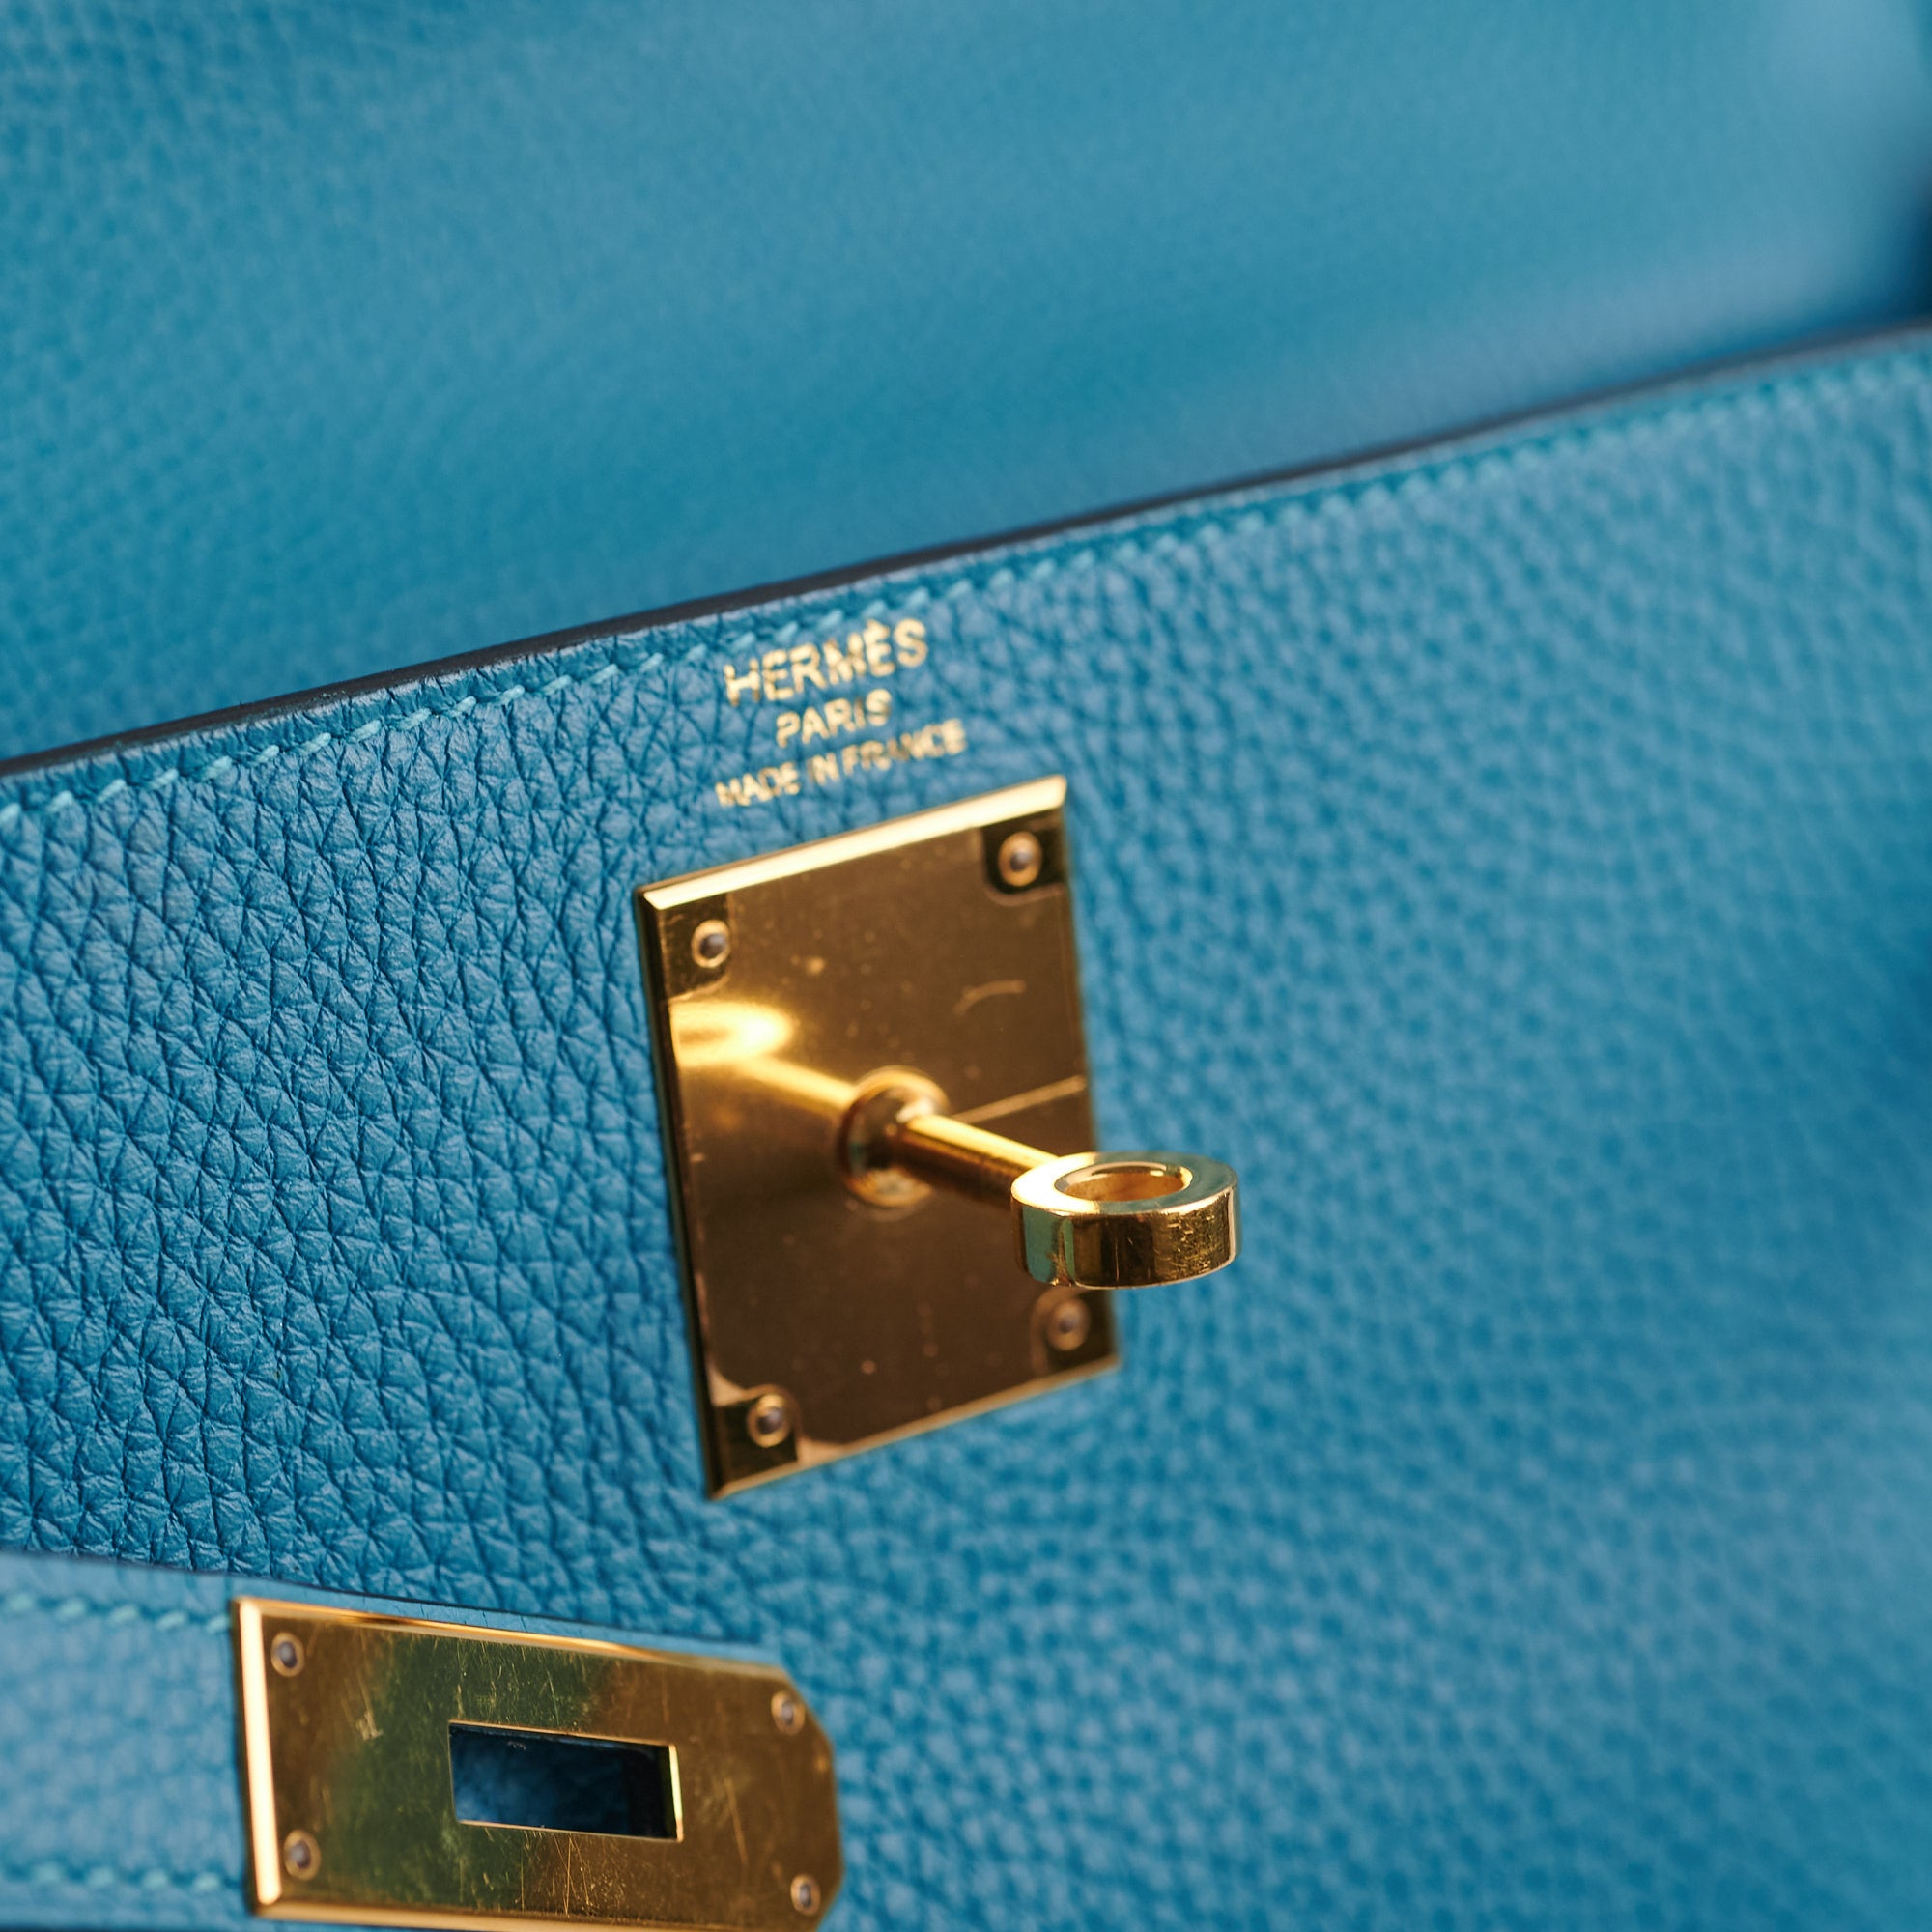 Hermès Kelly 28 Blue Jean - Togo Leather PHW